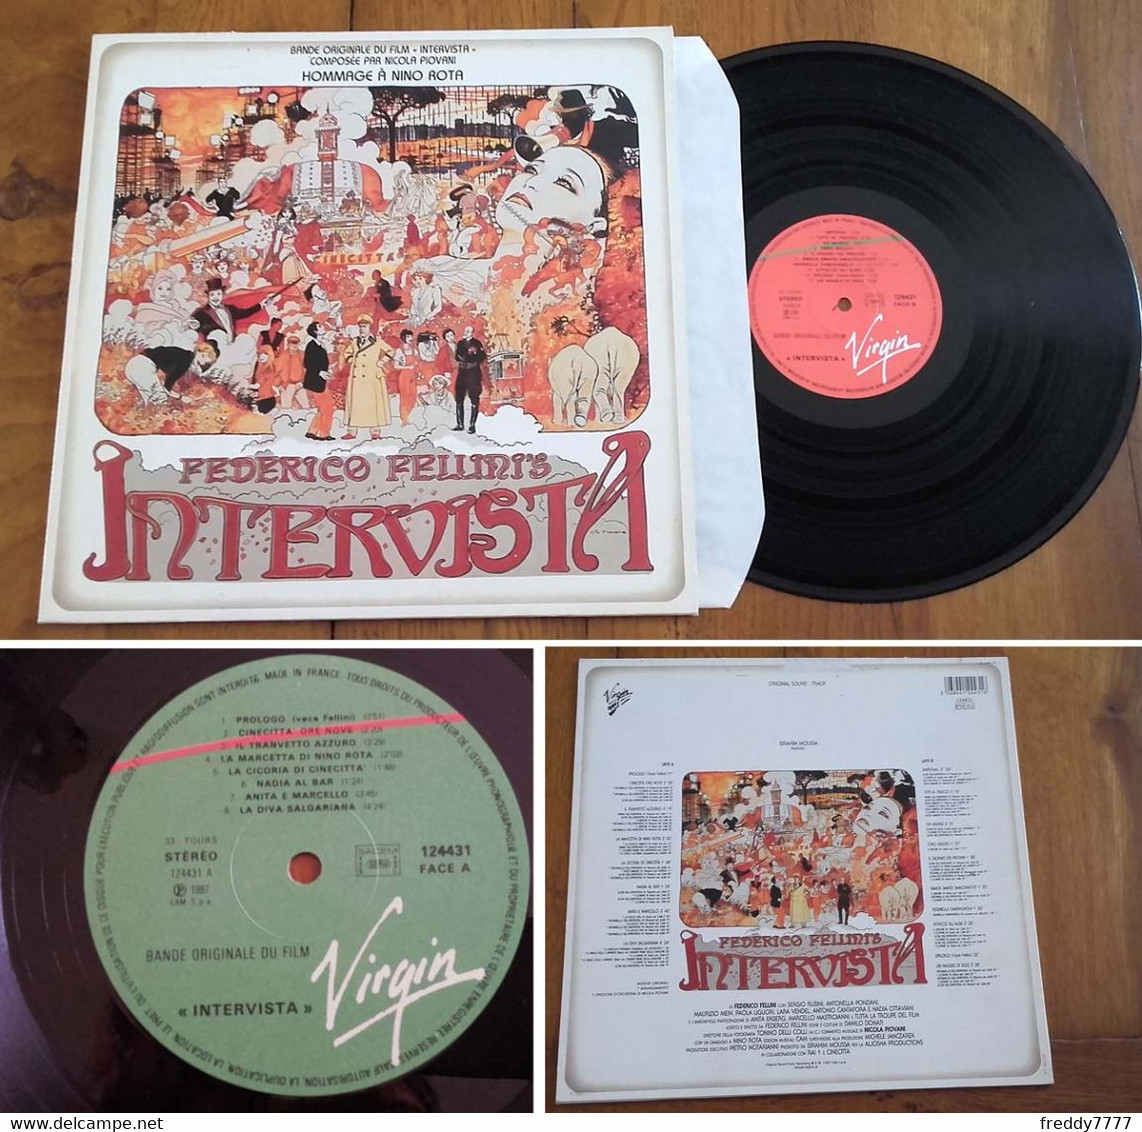 RARE French LP BOF OST 33t RPM (12") "INTERVISTA" (Federico Fellini, 1987) - Soundtracks, Film Music